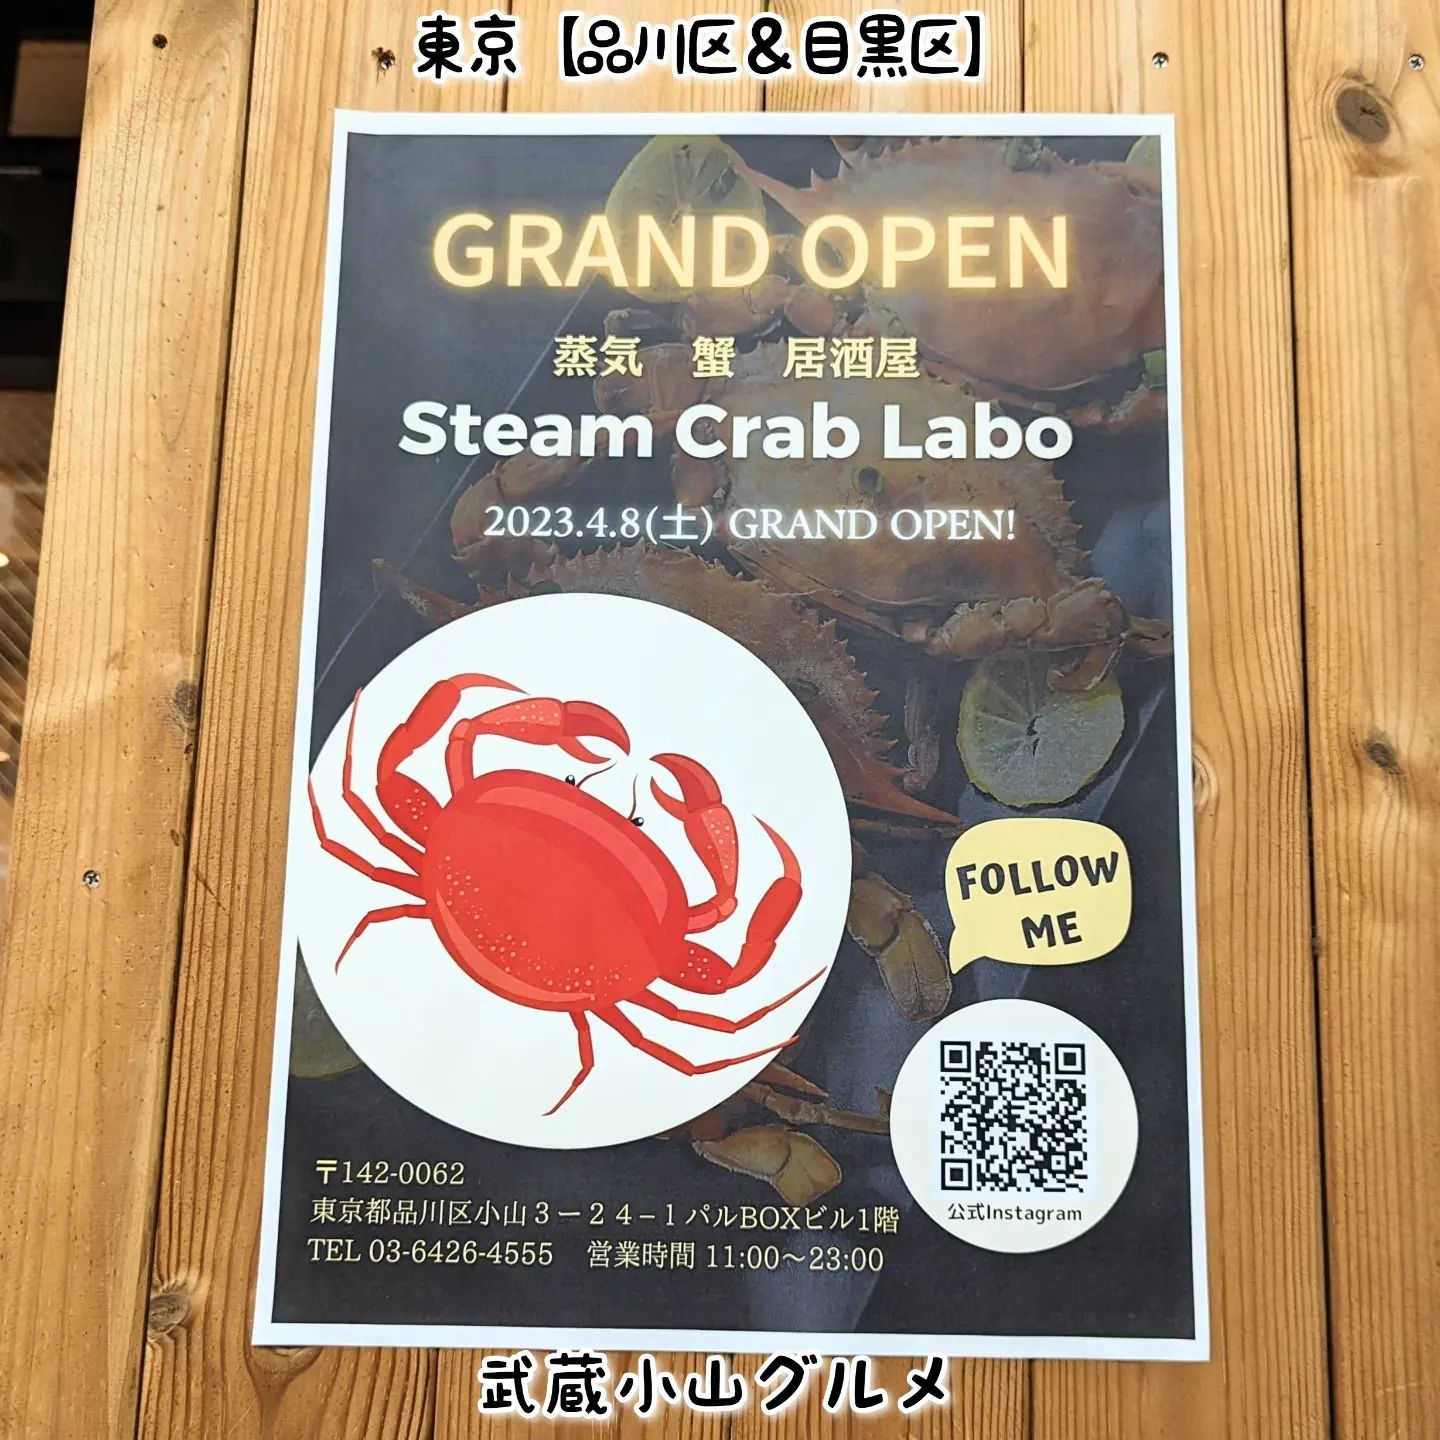 #武蔵小山グルメ情報「 #steamcrablabo 」2023年4月8日オープン！どんな蟹料理がいただけるか楽しみでございますね！SteamCrabLabo(スチームクラブラボ)@steam_crab_labo場所は、武蔵小山駅からパルム商店を中原街道方面へ進みまして20mほど進んだ右手側にございます。富士そばの近くでございますね。【侍猫を応援】「フォロー」＆「いいね」＆「保存」どうぞよろしくお願いします！【侍猫をもっと応援】メインサイトもいろいろ見ていただくと侍猫がさらに元気になって武蔵小山グルメをもっと食べ歩けるようになります！（お店の地図＆追加画像あり！）→ https://musashikoyama.samuraicat.jp/ → @musashikoyama.news ※メインサイトへの移動はプロフィールのURLが簡単！【侍猫に連絡】気になるお店やおすすめの新メニュー情報などお気軽にDMください！気まぐれに投稿いたします！もちろんお仕事の依頼も受付中でございます。#武蔵小山 #武蔵小山情報 #武蔵小山ランチ #武蔵小山商店街  #武蔵小山グルメ #武蔵小山カフェ #西小山 #戸越銀座 #不動前 #碑文谷 #戸越 #中延  #荏原中延 #目黒本町 #品川 #品川区 #品川グルメ #目黒 #目黒区 #目黒グルメ #東京 #東京グルメ #新店 #新店オープン #武蔵小山新店 #武蔵小山オープン #スチームクラブラボ #蟹